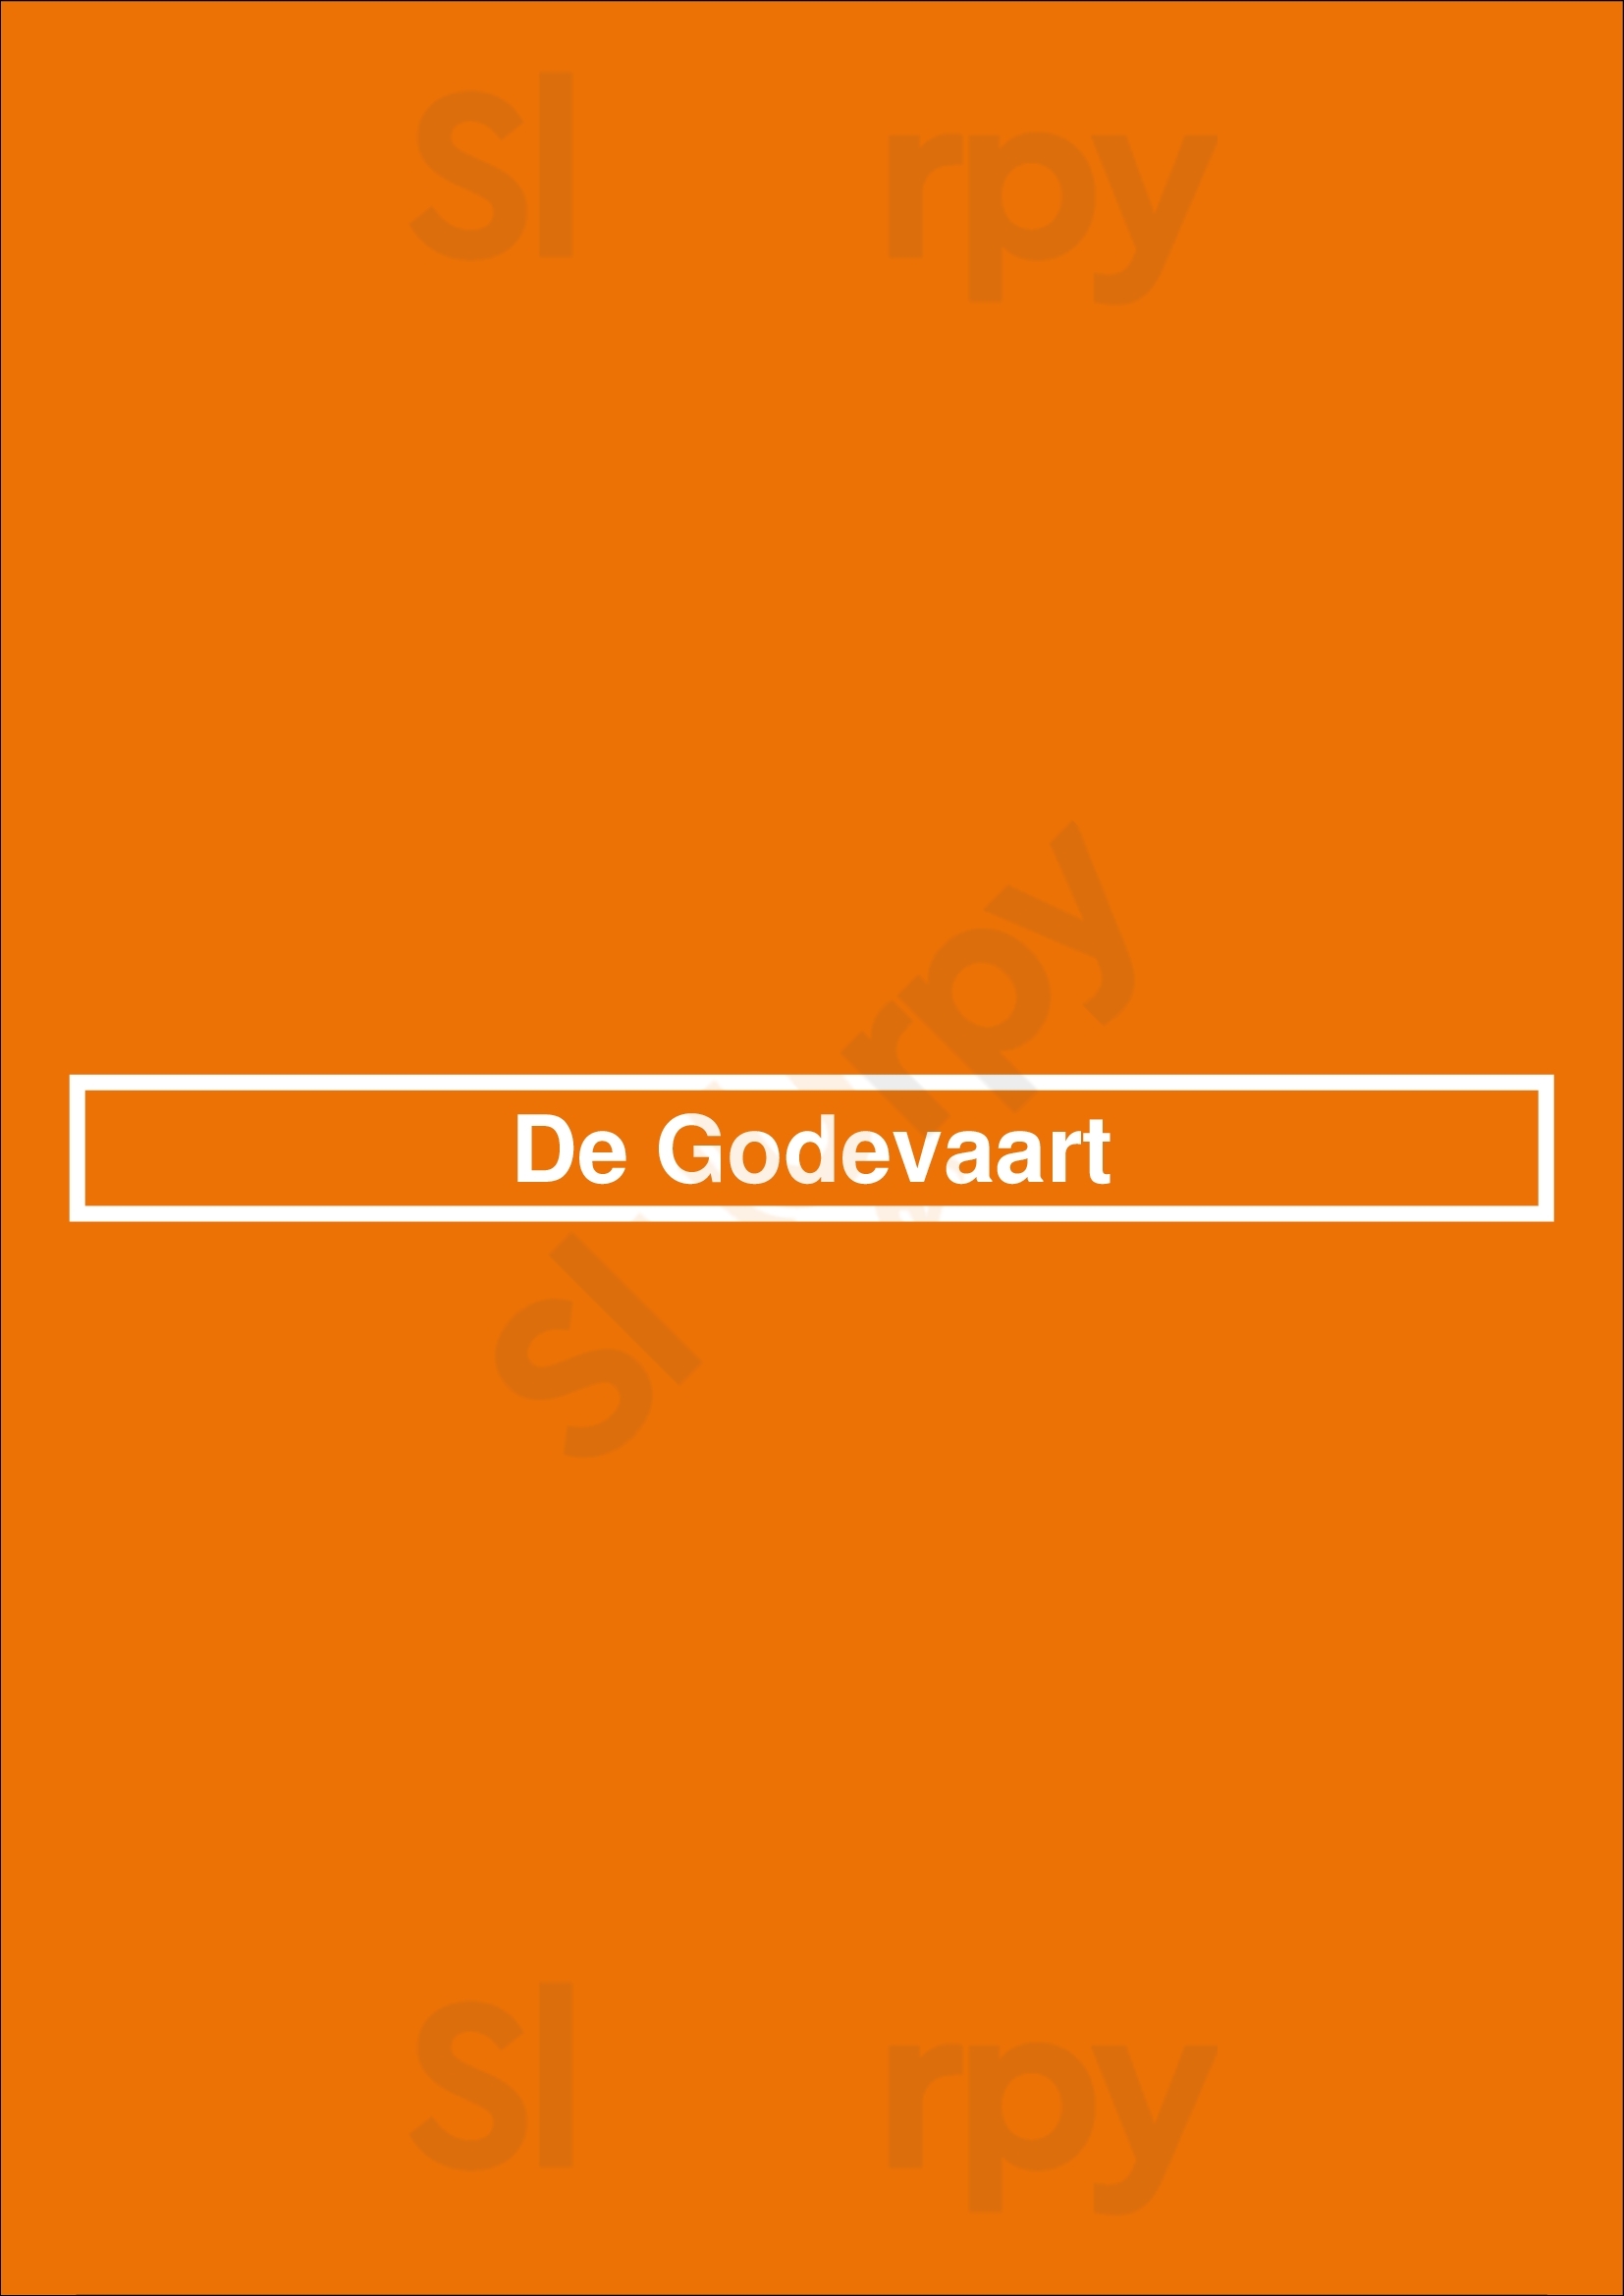 De Godevaart Anvers Menu - 1